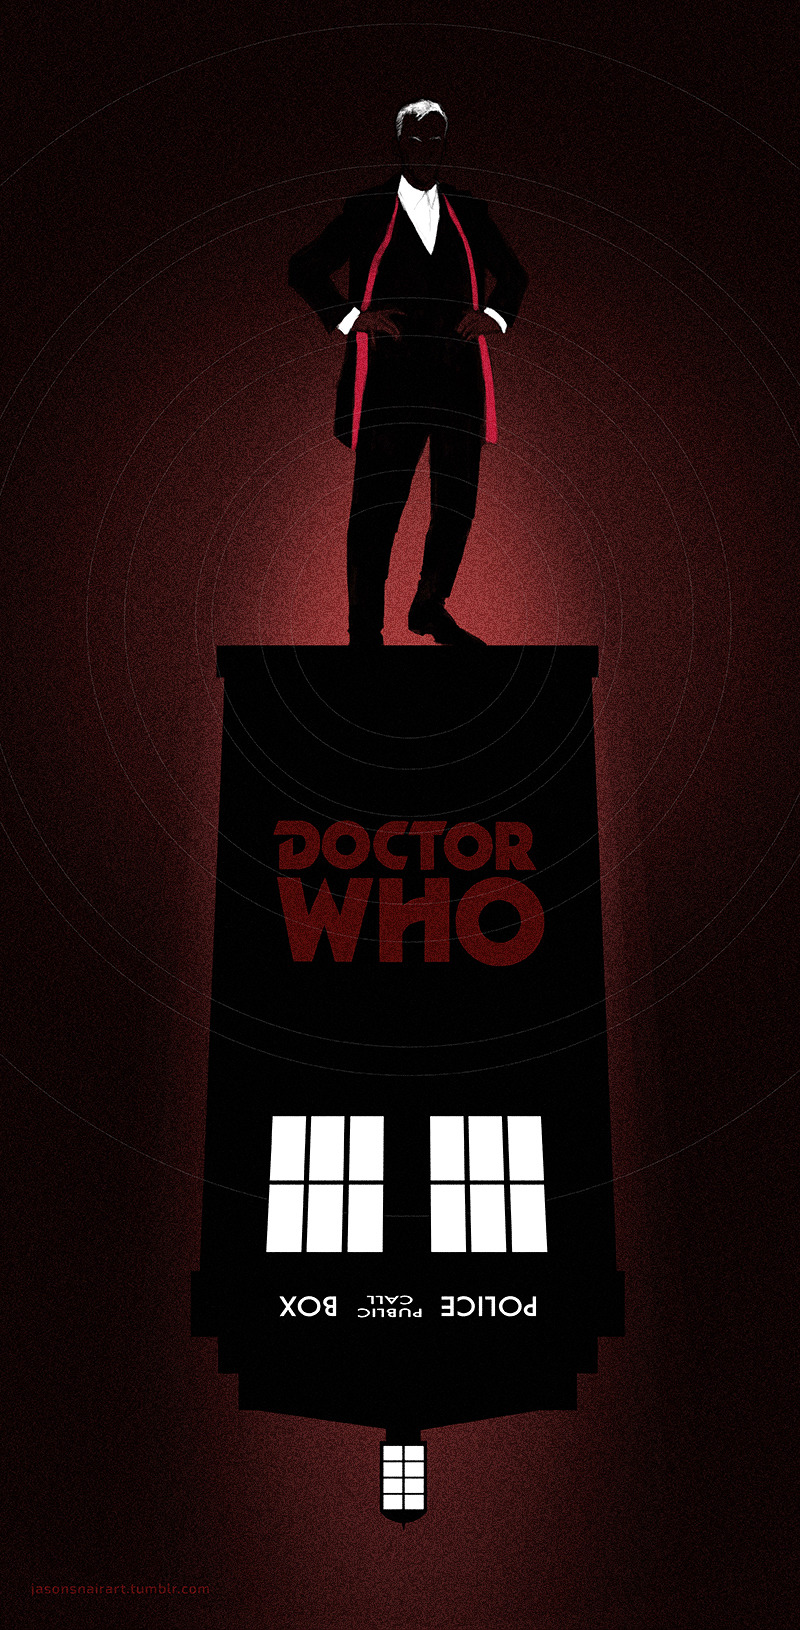 Doctor Who Fan art poster